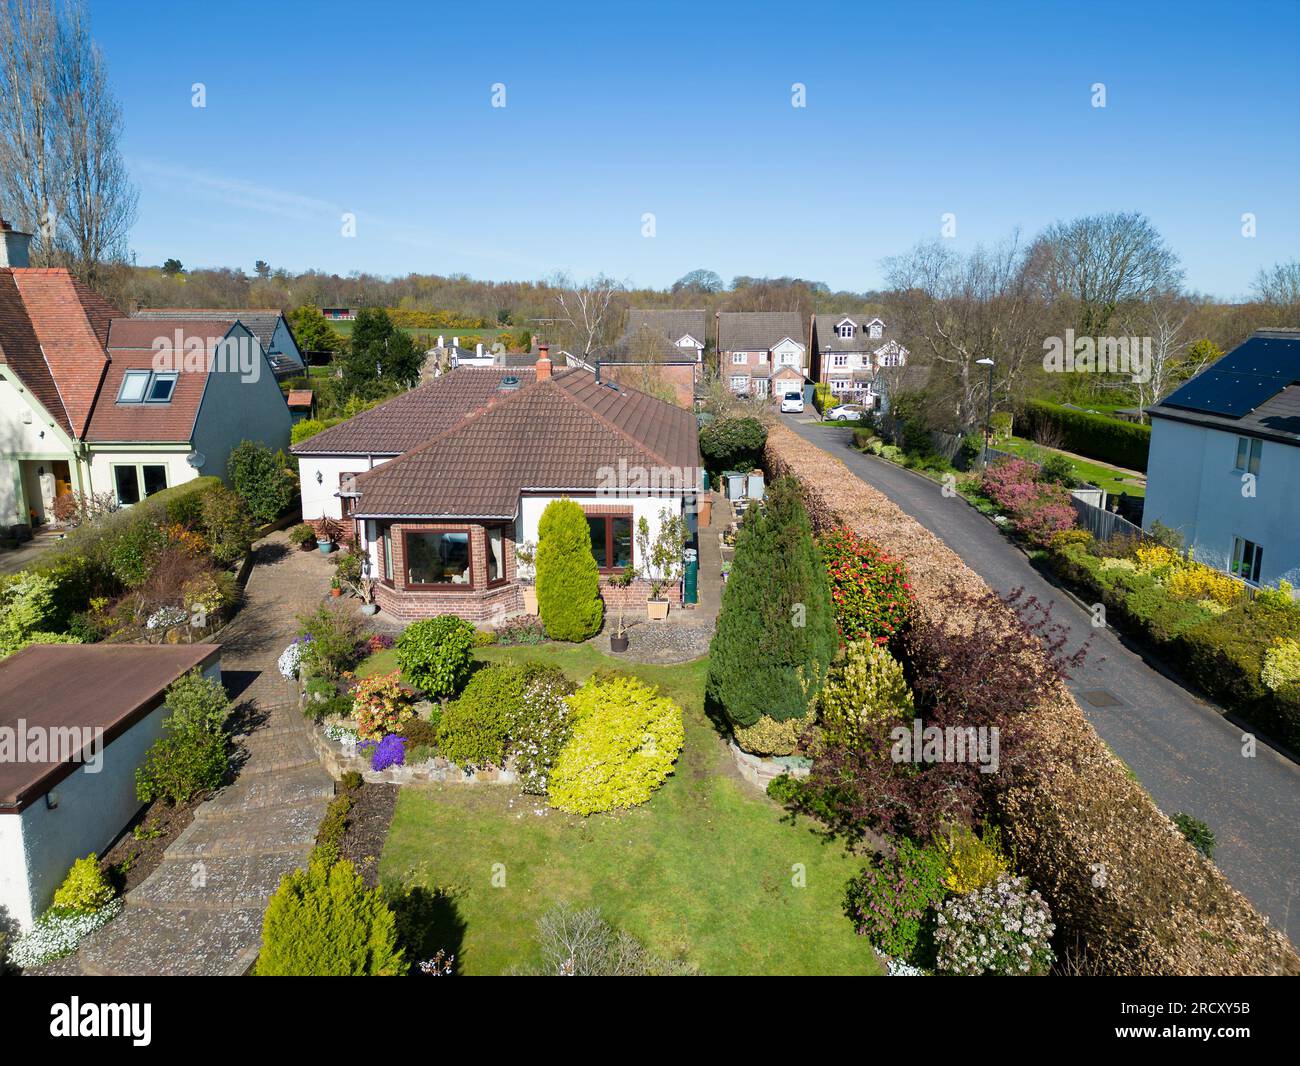 Vista aerea del bungalow inglese e del giardino frontale in una giornata di sole con cielo blu, Inghilterra Foto Stock